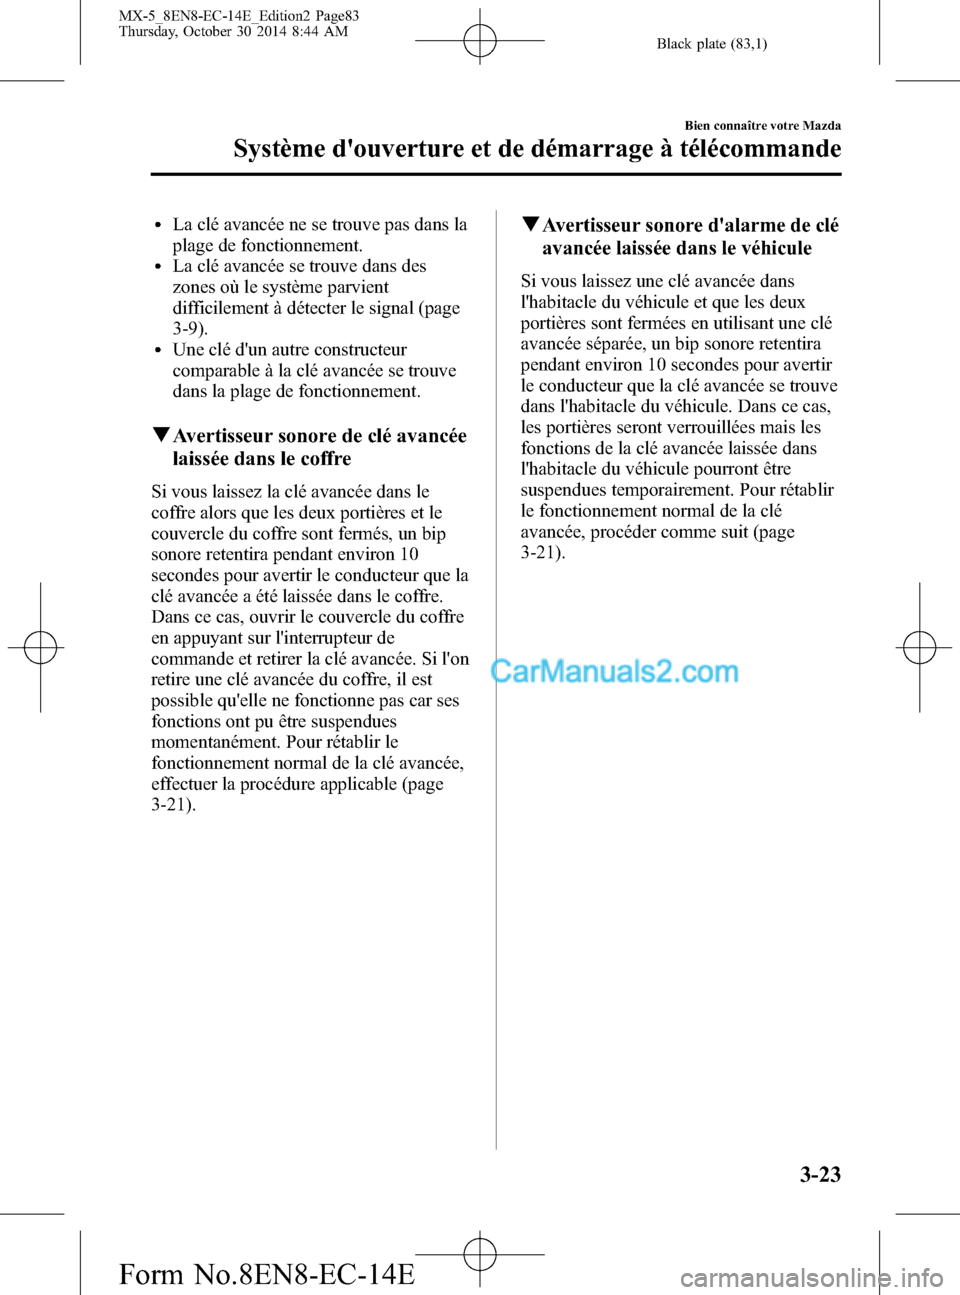 MAZDA MODEL MX-5 2015  Manuel du propriétaire (in French) Black plate (83,1)
lLa clé avancée ne se trouve pas dans la
plage de fonctionnement.
lLa clé avancée se trouve dans des
zones où le système parvient
difficilement à détecter le signal (page
3-